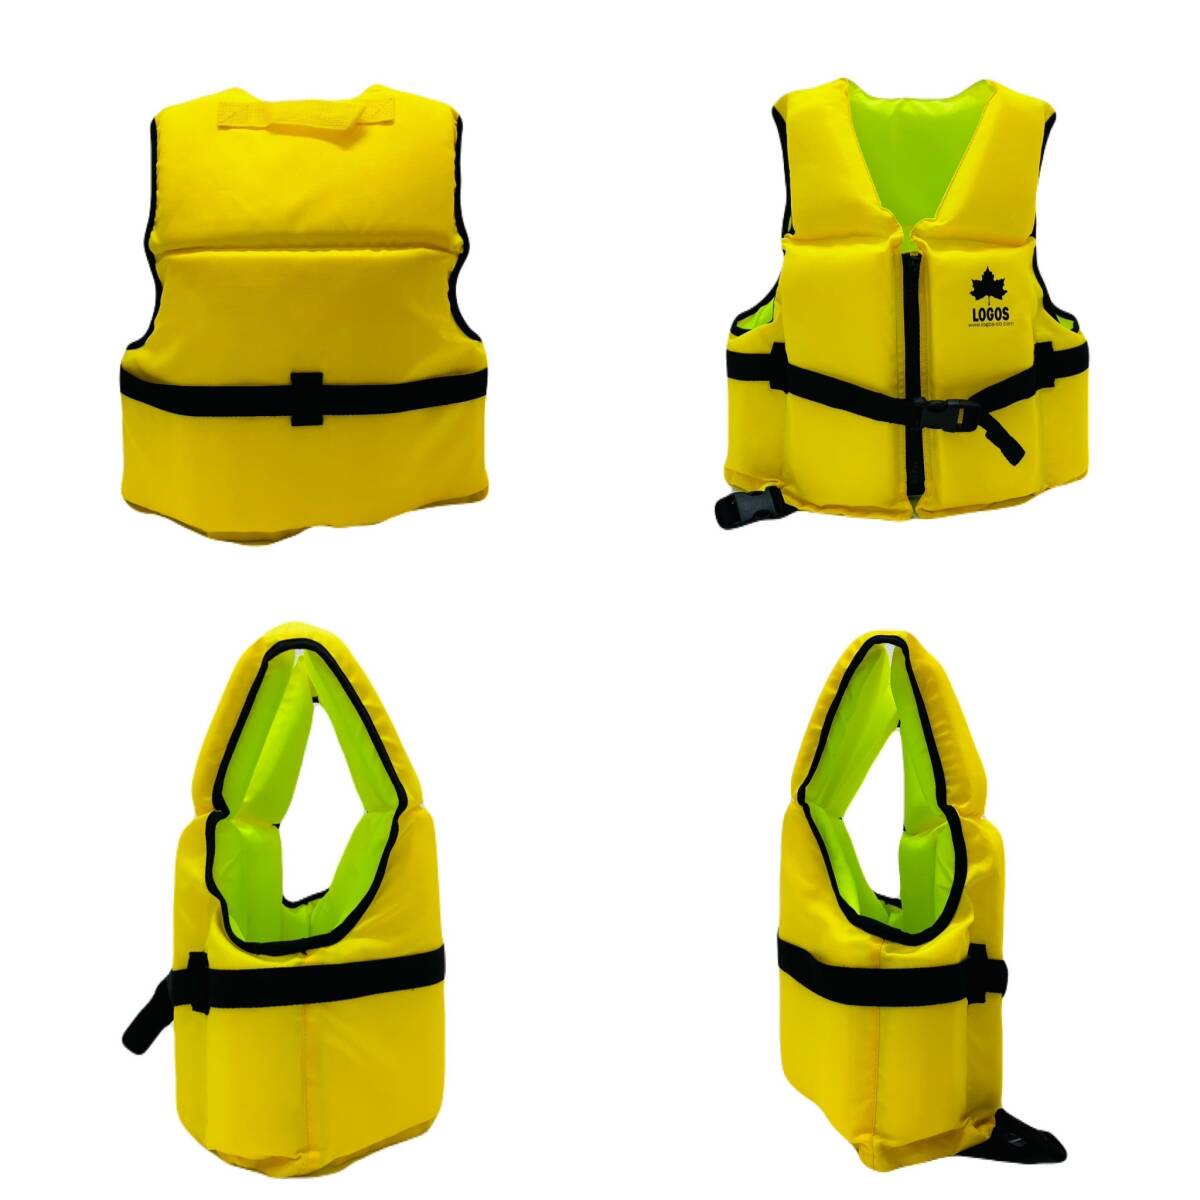 [ морской спорт * бассейн * водные развлечения ]LOGOS Logos спасательный жилет желтый детский плавающий лучший жизнь лучший Kids для желтый цвет 